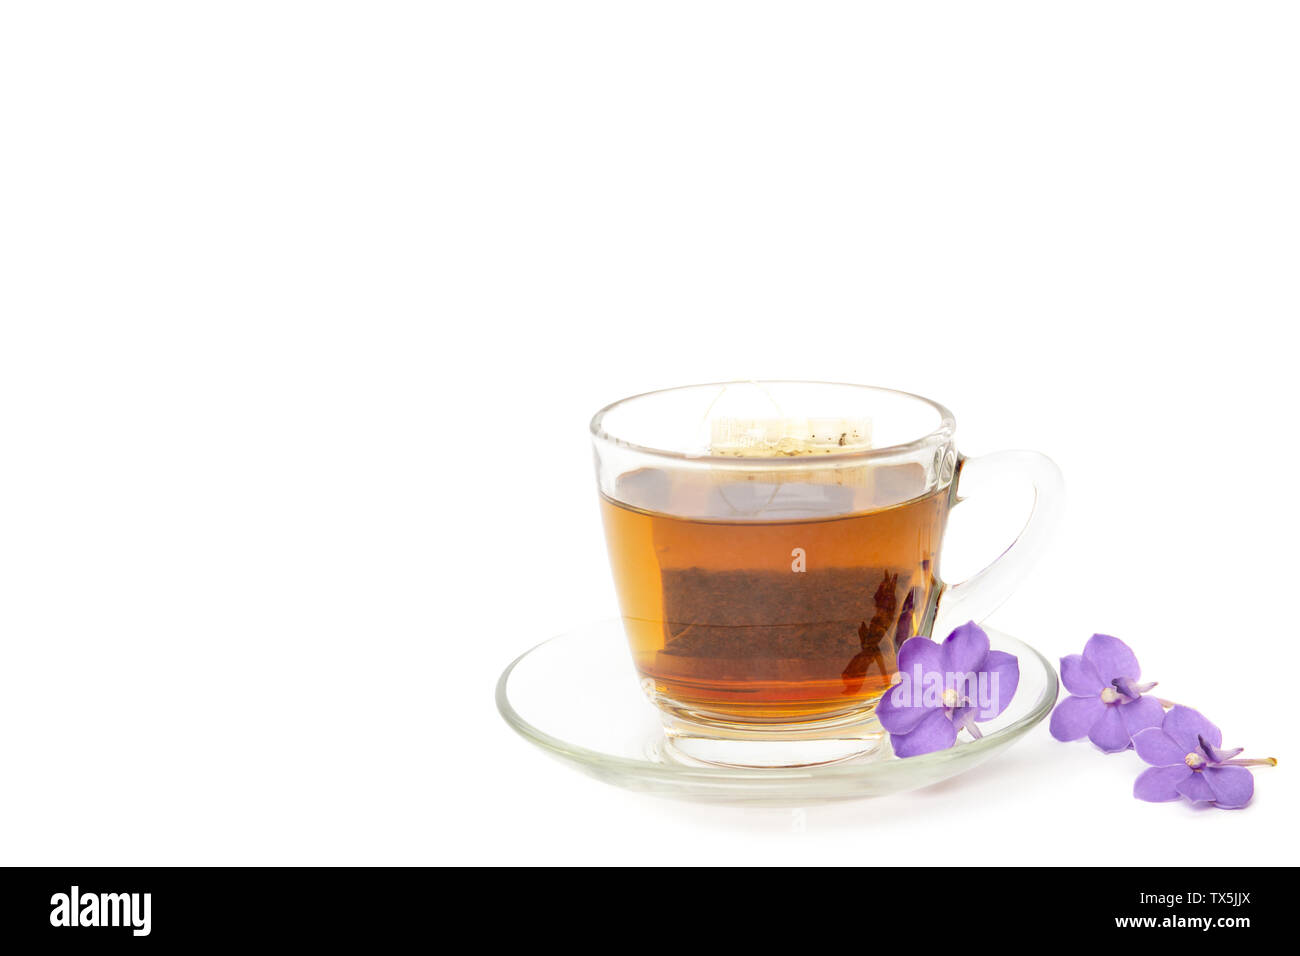 Sacchetto da tè in un bicchiere di vetro con fiori viola isolato in uno sfondo bianco. Foto Stock